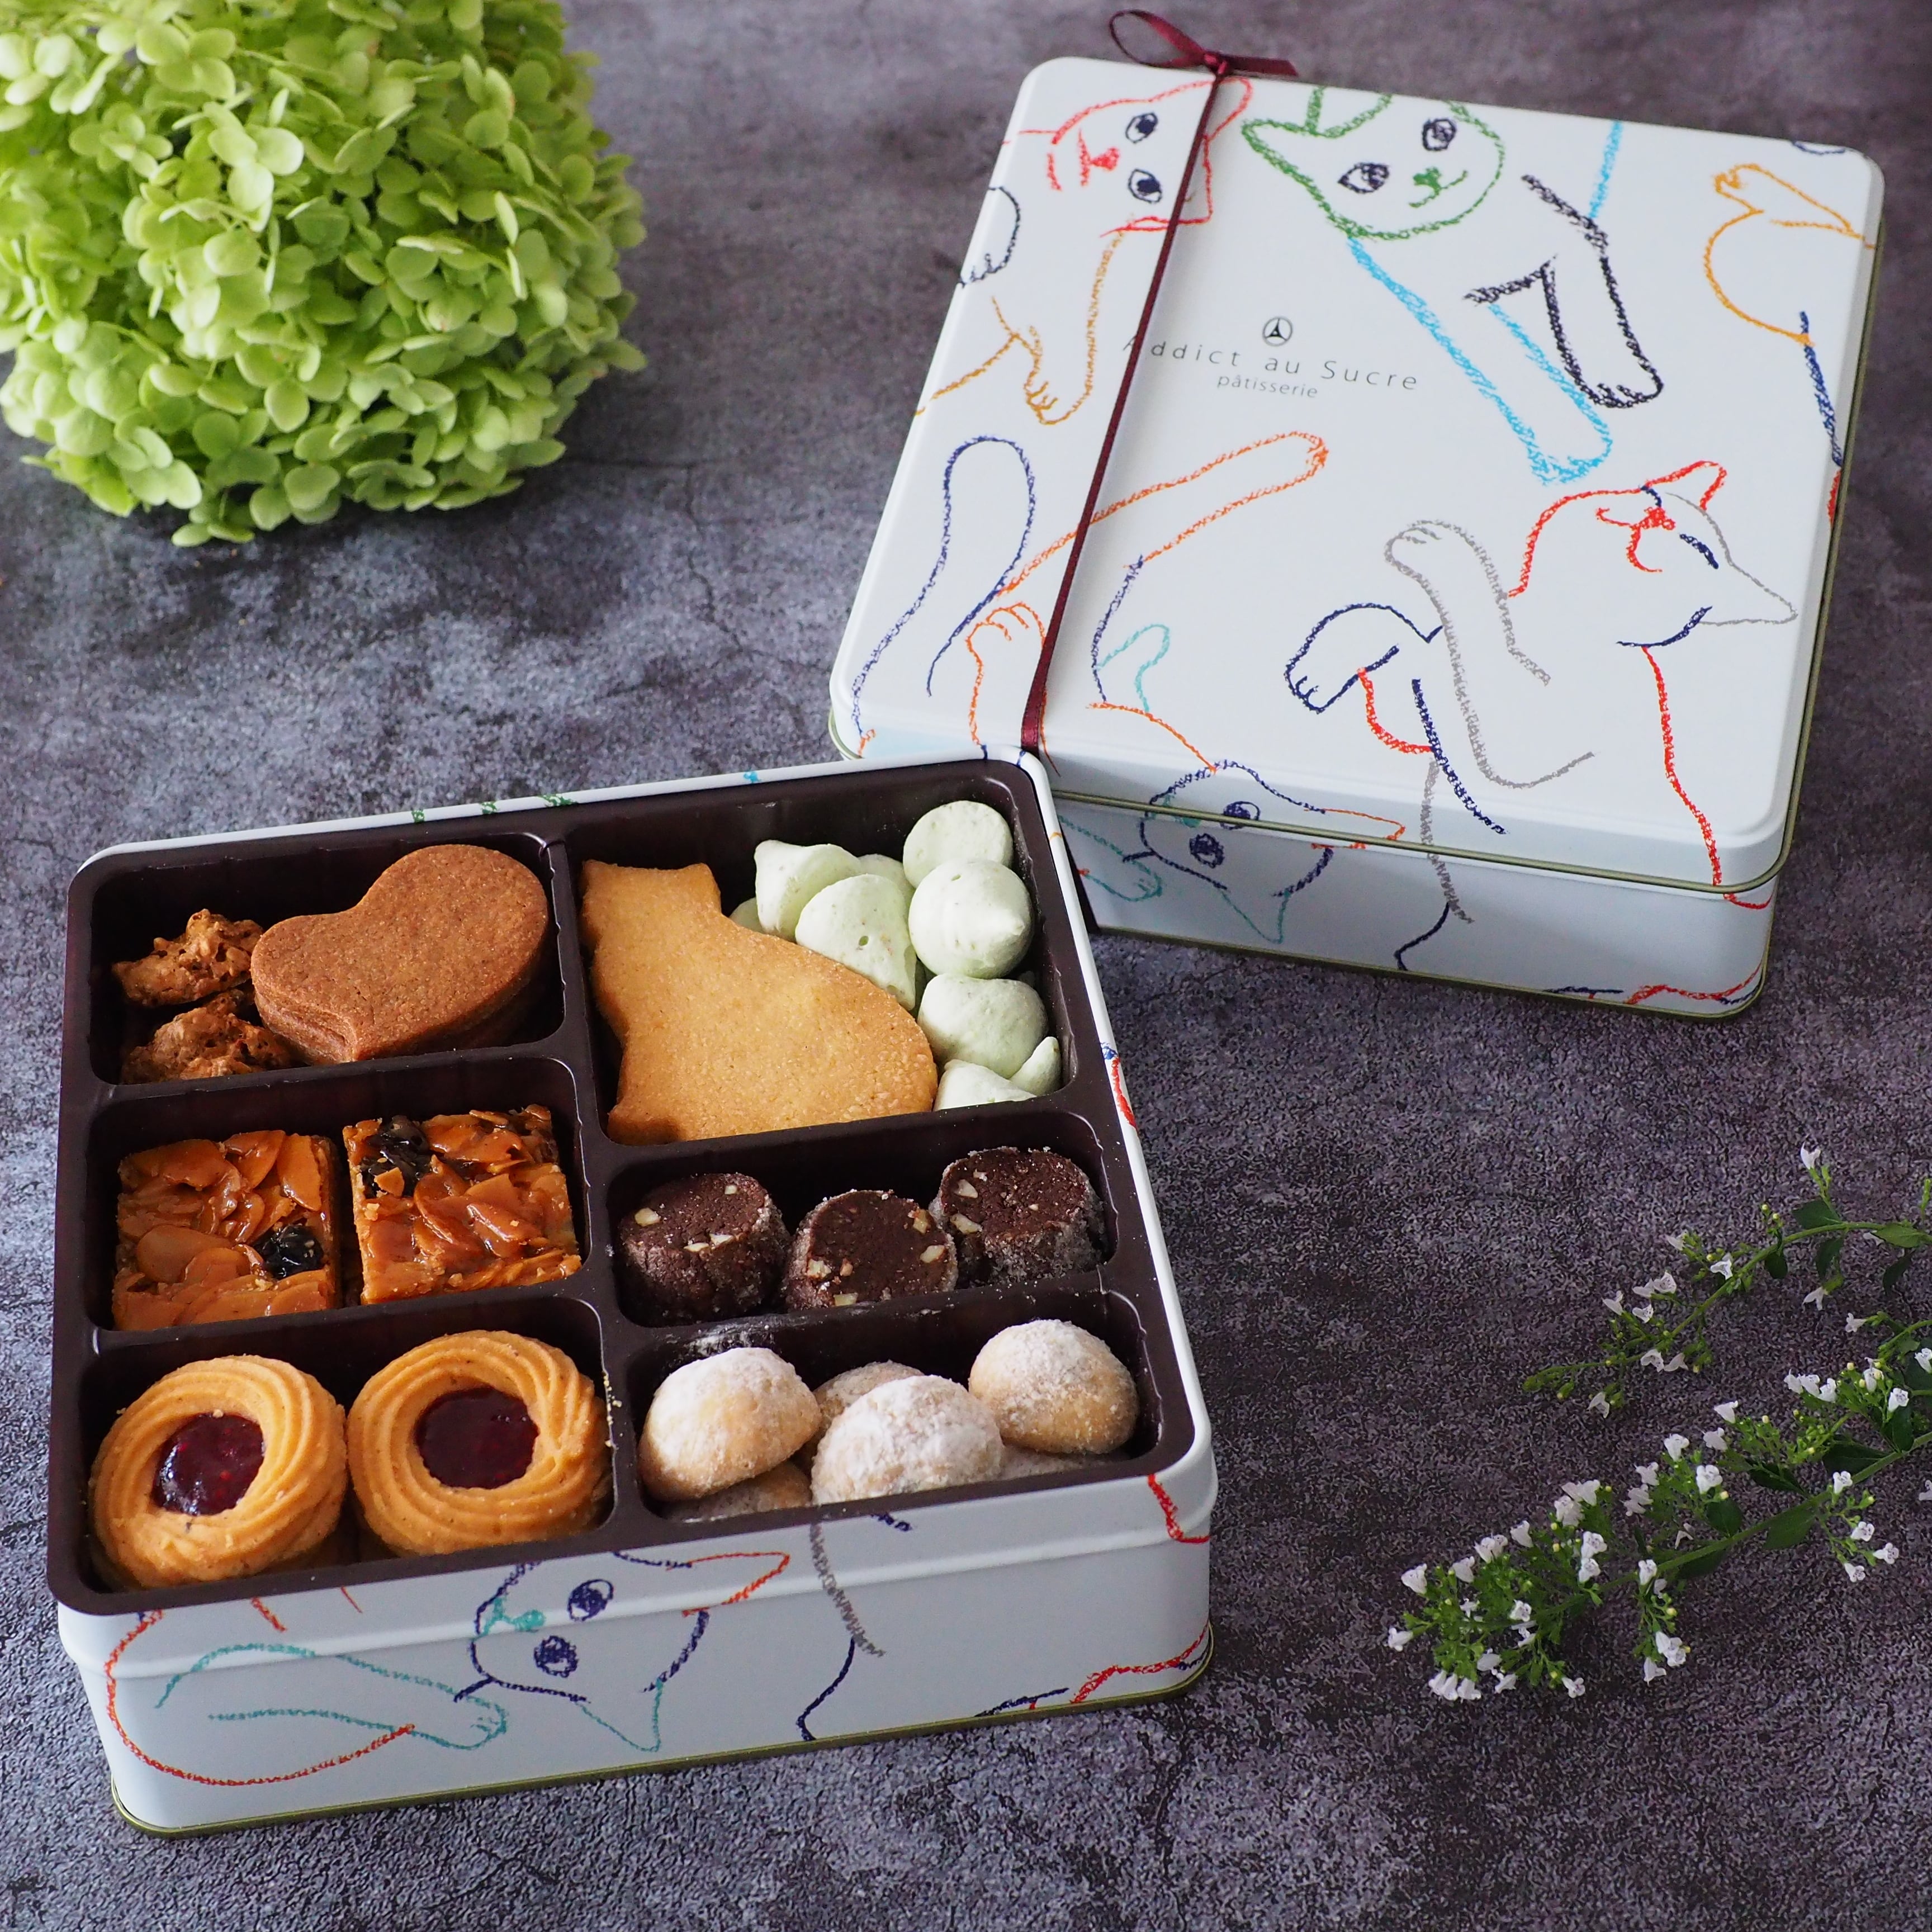 レシャ アン パステル 猫デザインのクッキー缶 8種焼き菓子セット【アディクト オ シュクル】【店頭受取専用】